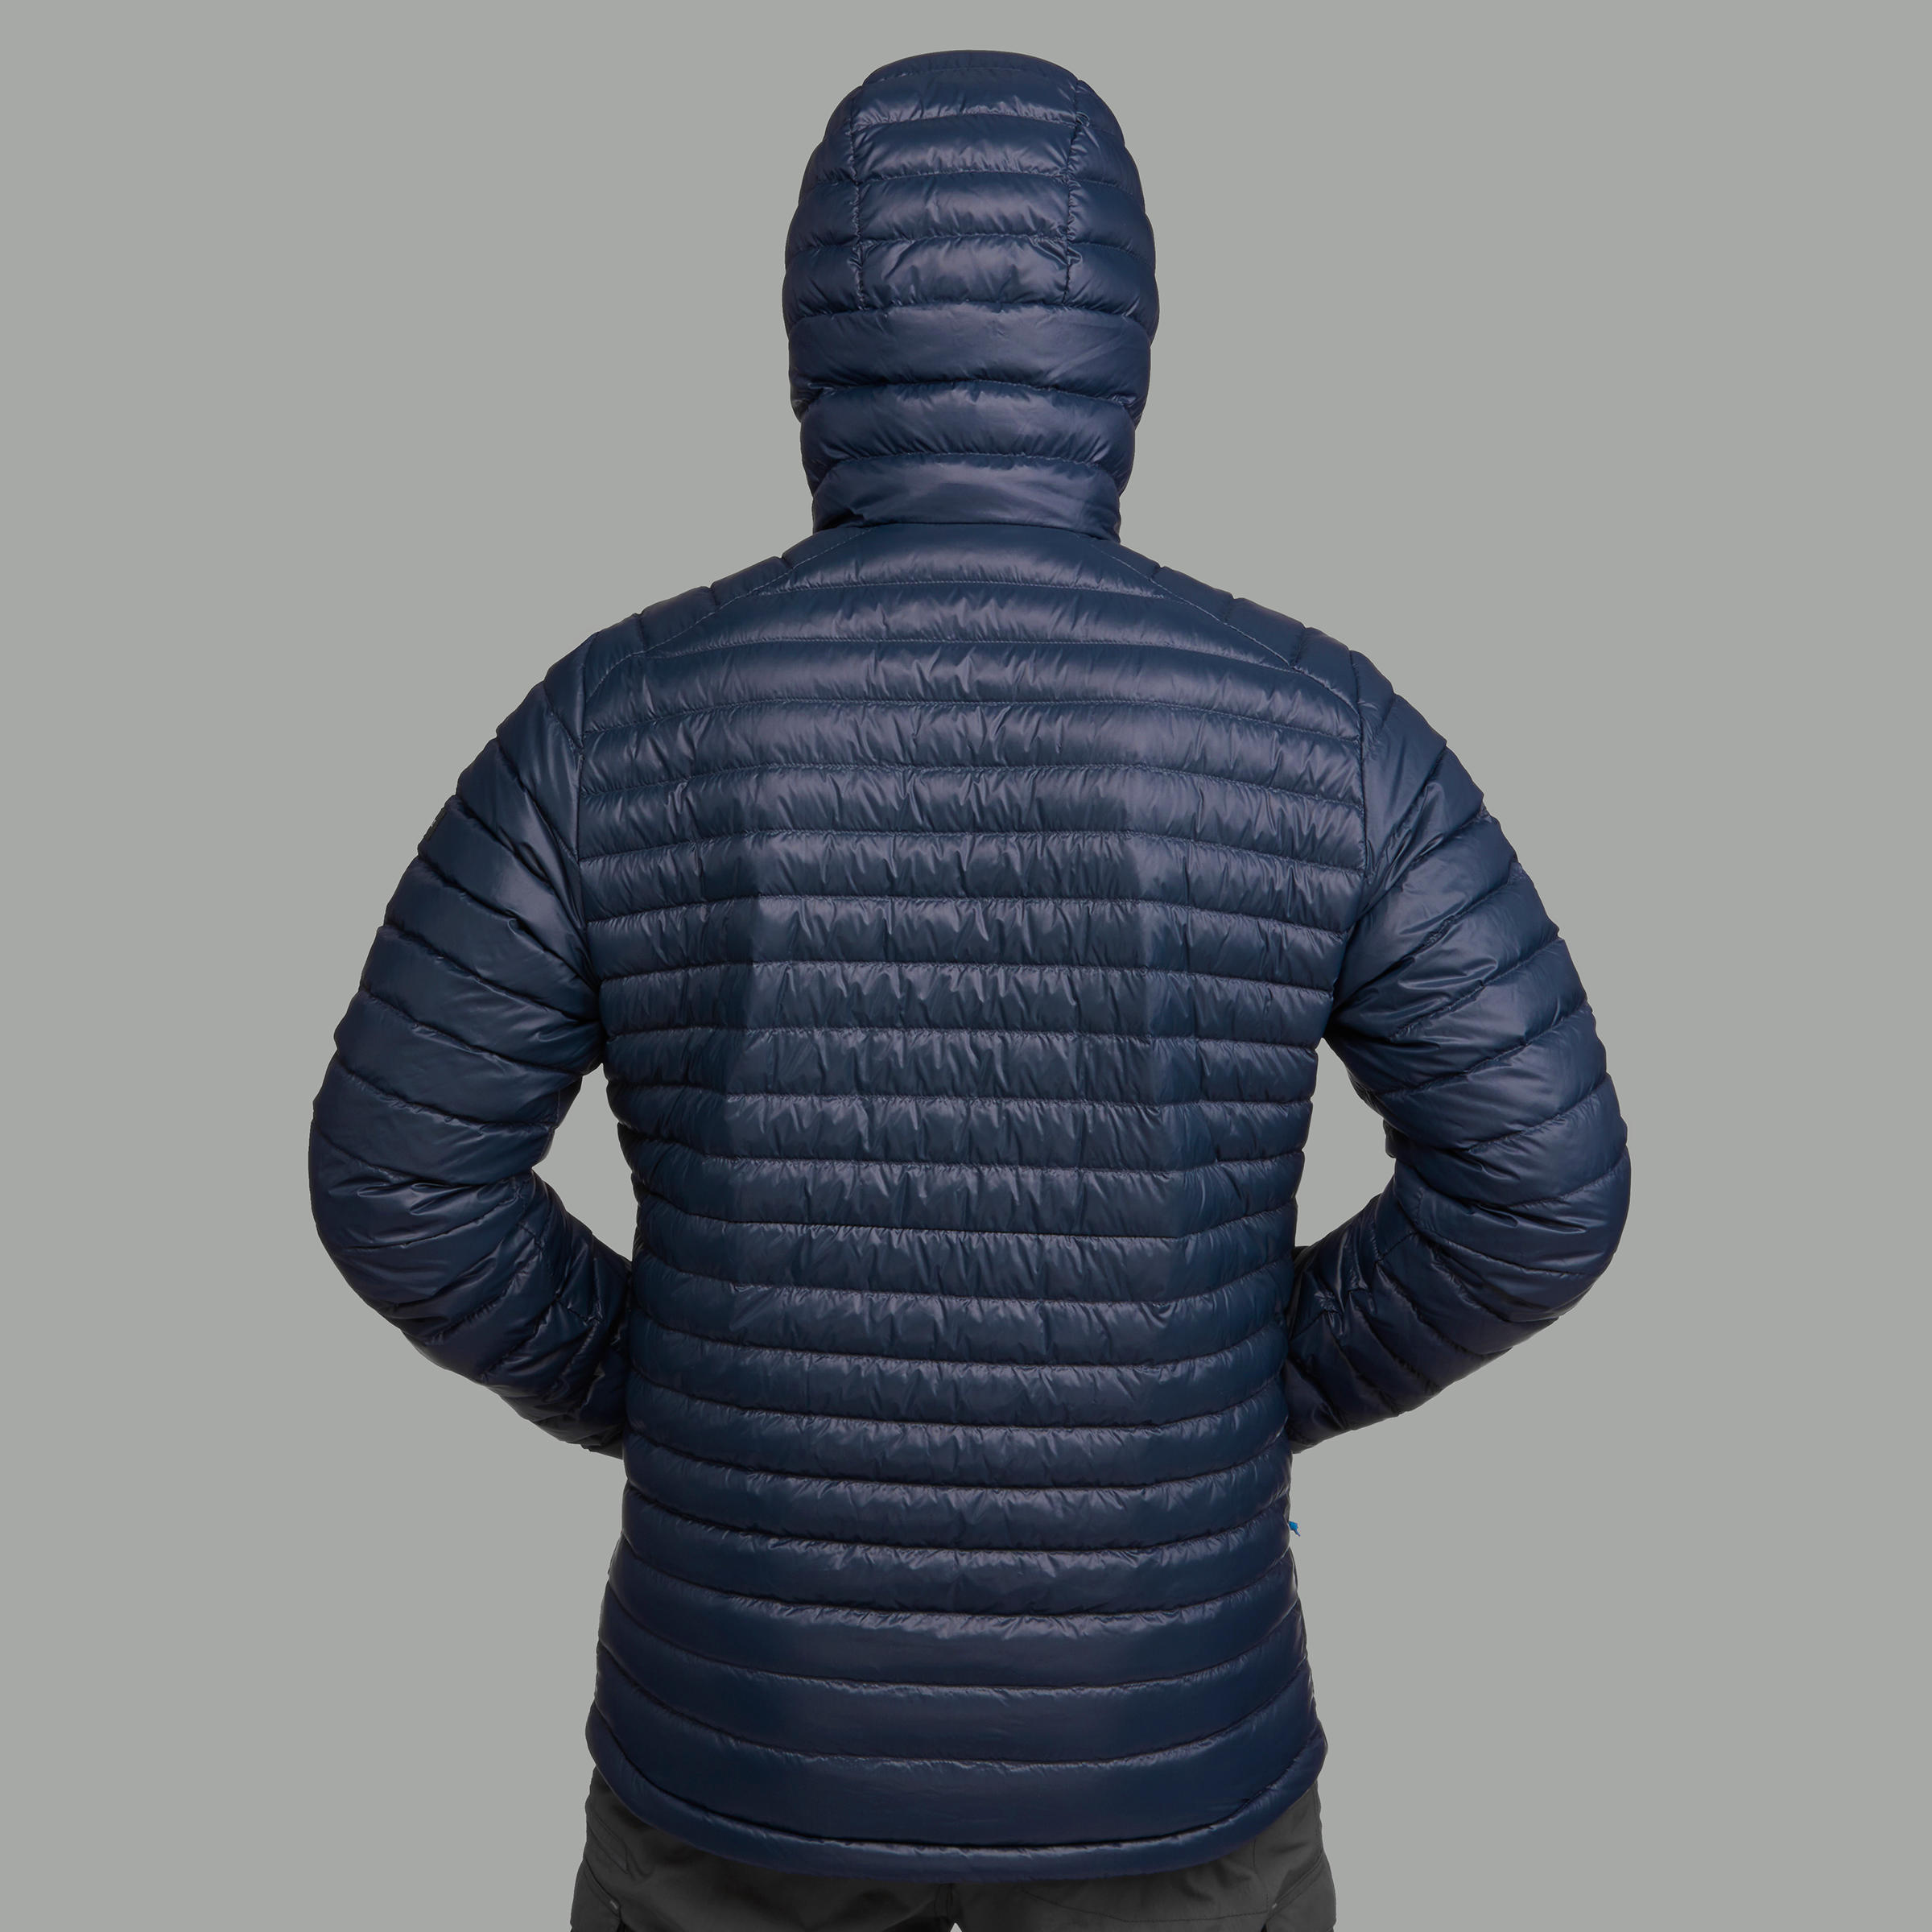 Manteau en duvet avec capuchon homme – MT 100 bleu - FORCLAZ